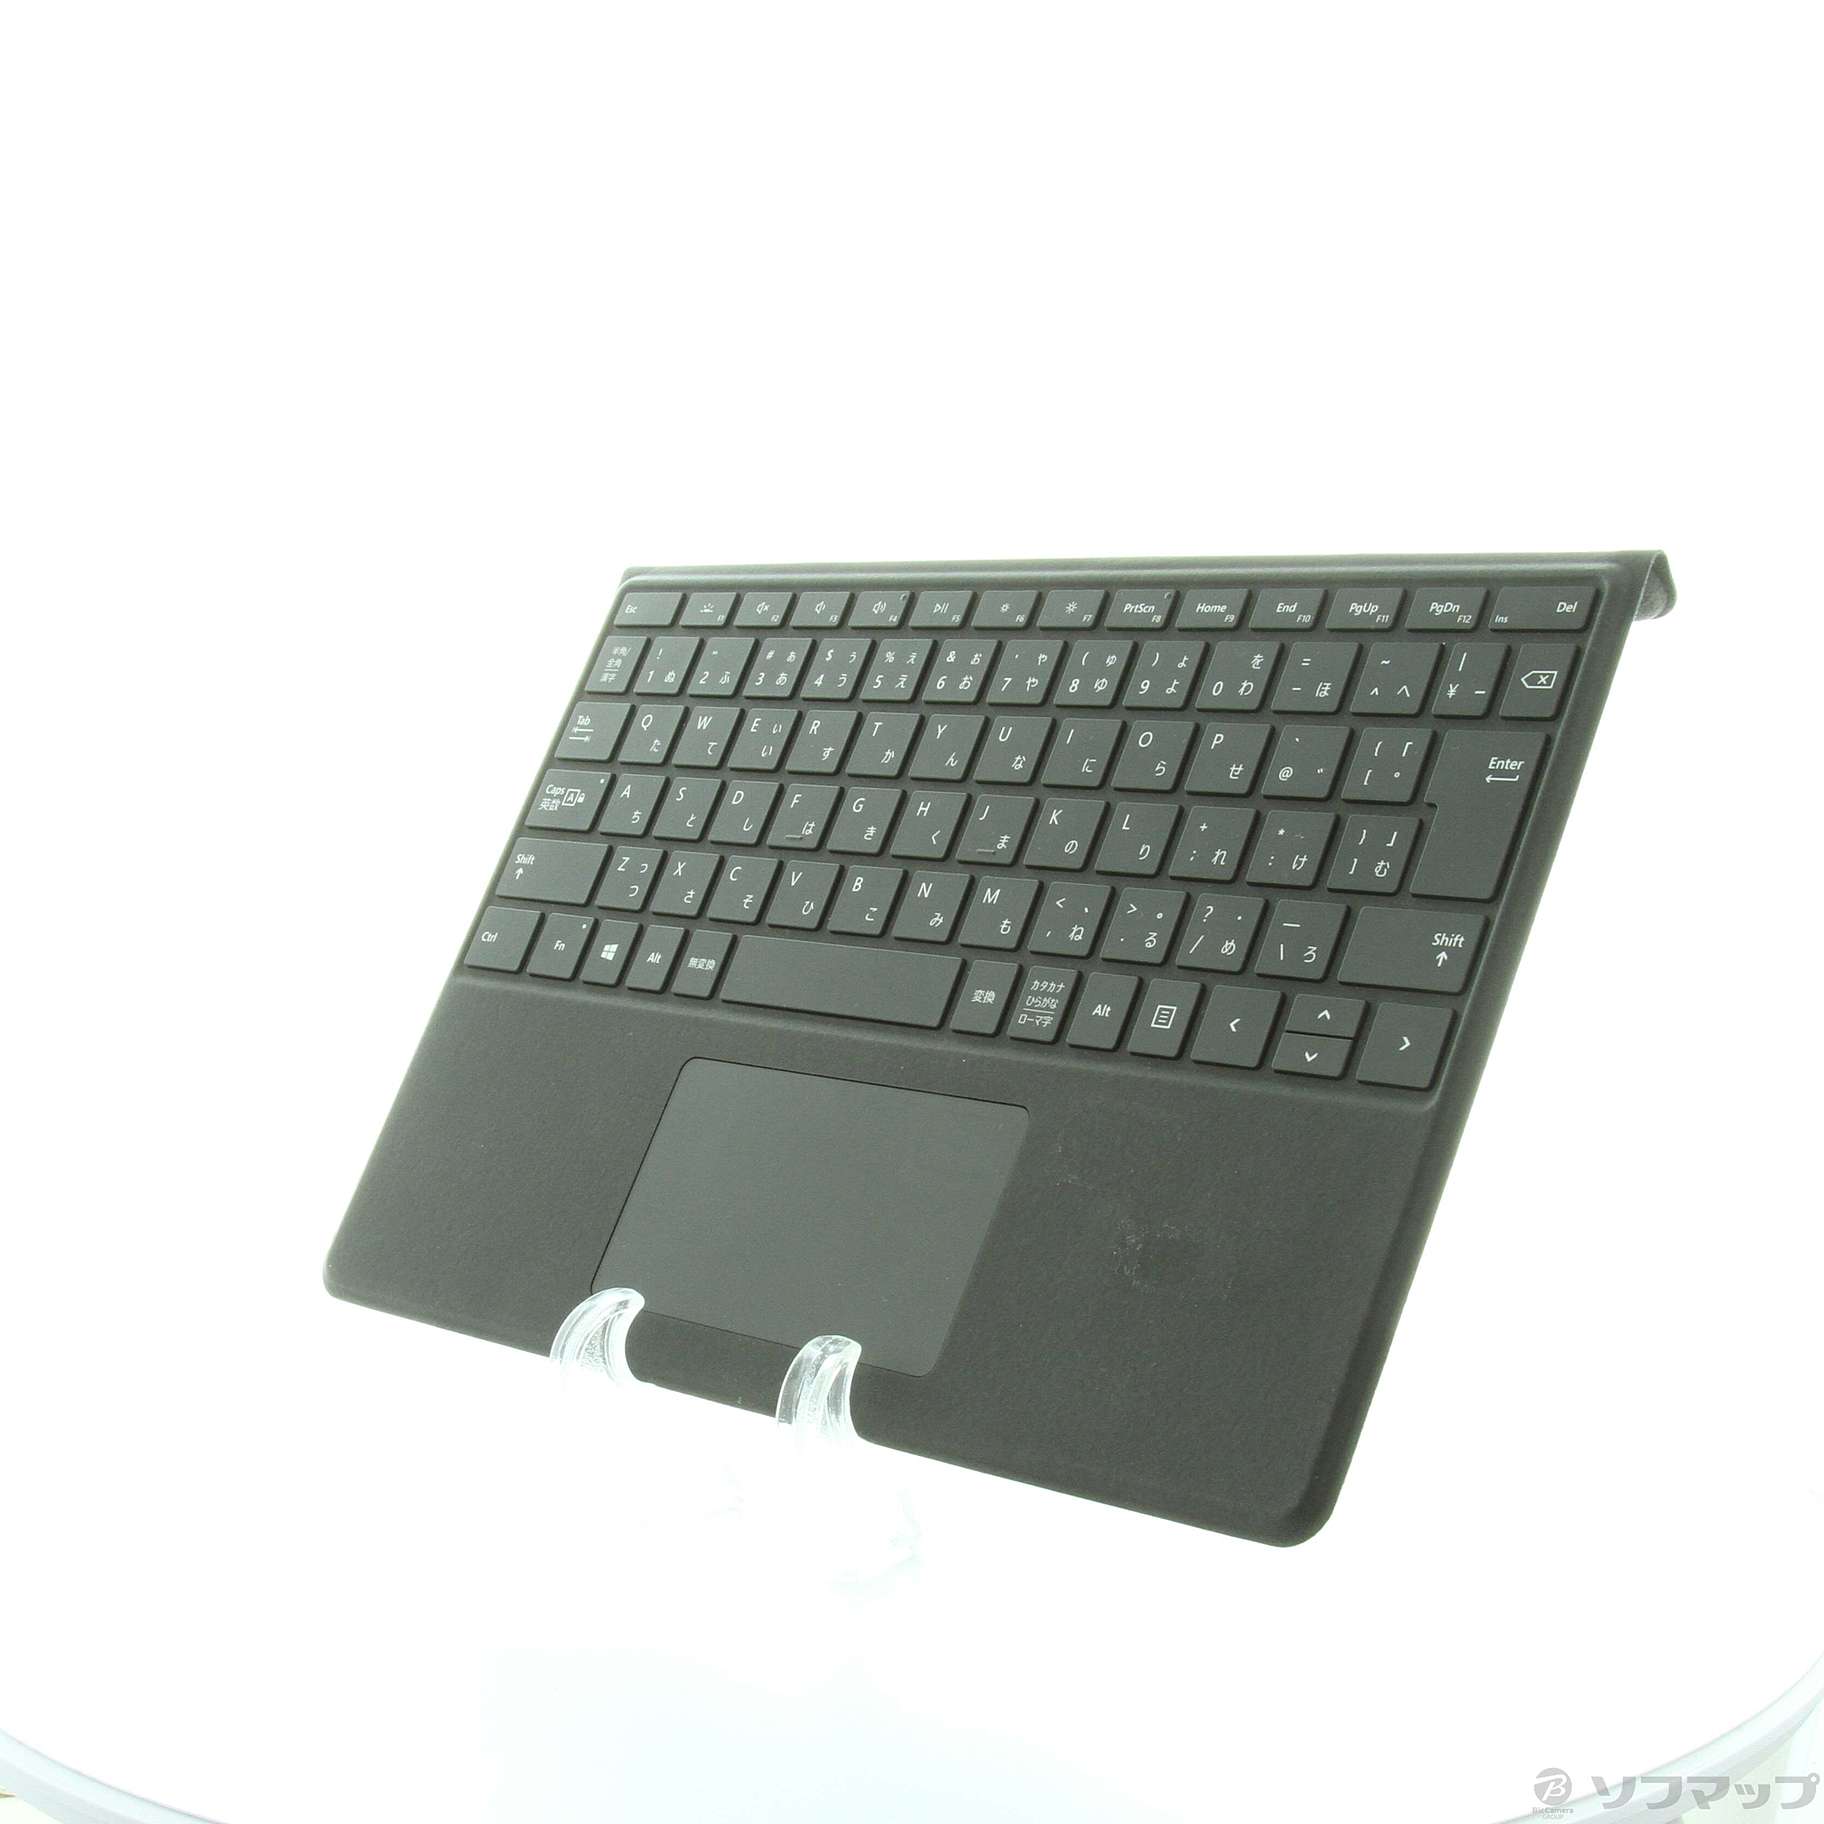 〔展示品〕 Surface Pro X Signature キーボード スリム ペン付き QVH-00019 ブラック